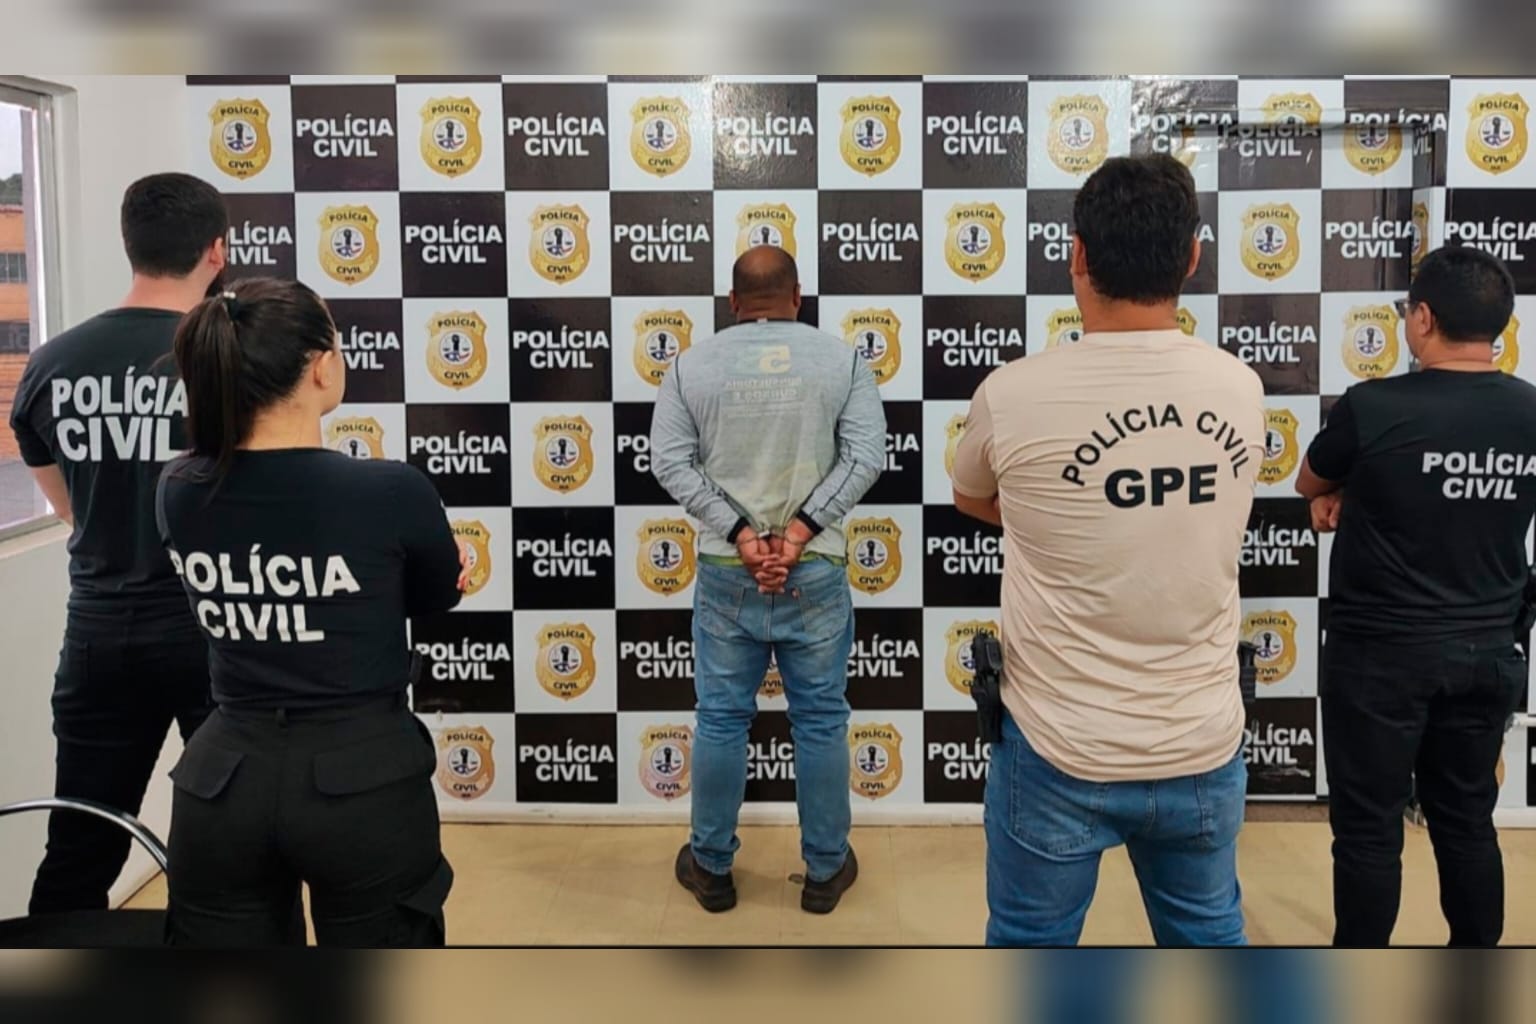 PC do Pará prende suspeito de divulgar fotos íntimas de ex-mulher no Maranhão